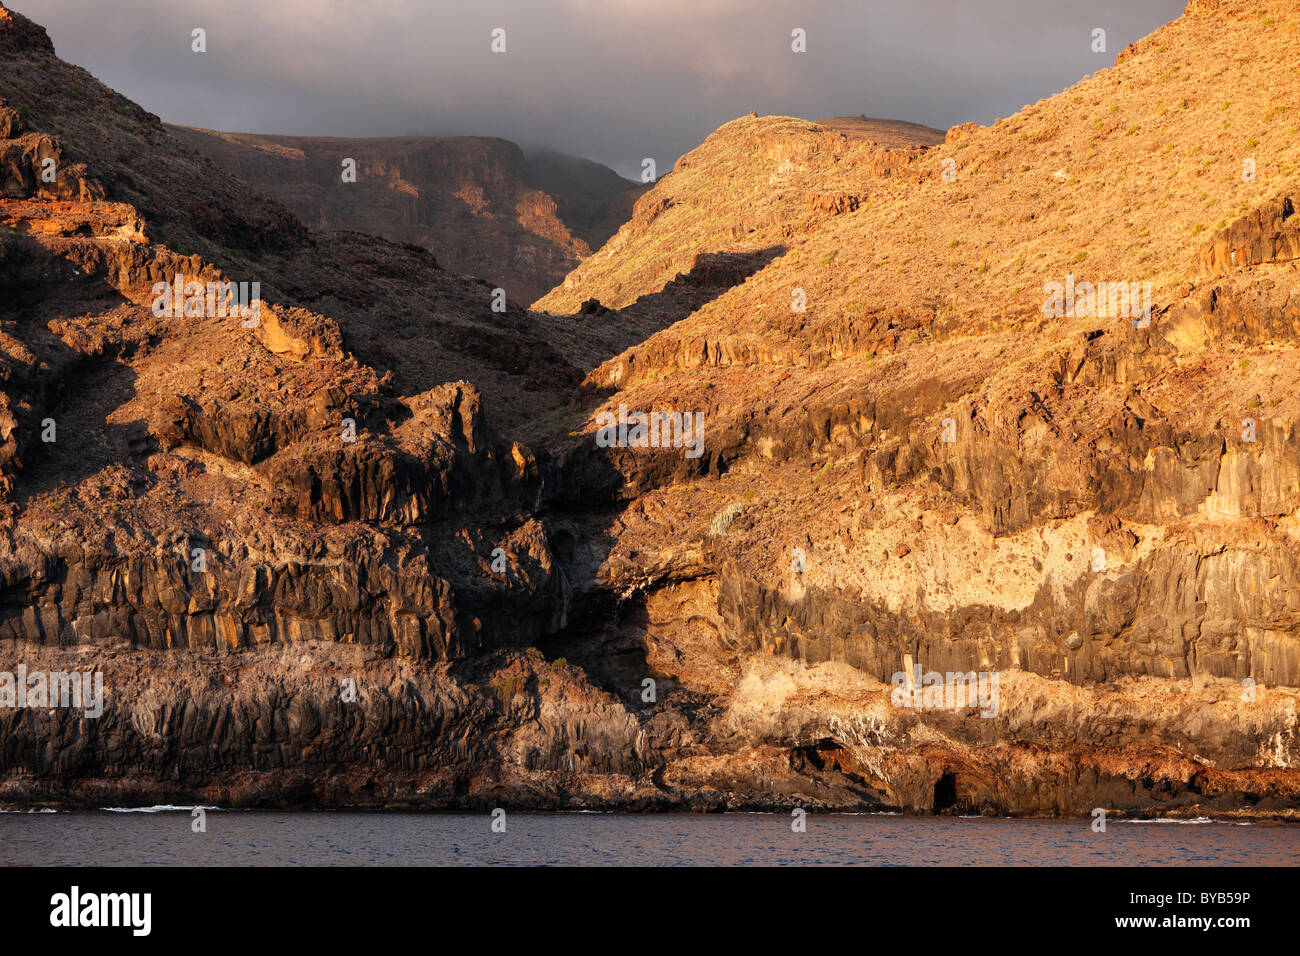 Costa rocosa en la luz de la tarde, al sur de la costa oeste, La Gomera, Islas Canarias, España, Europa Foto de stock